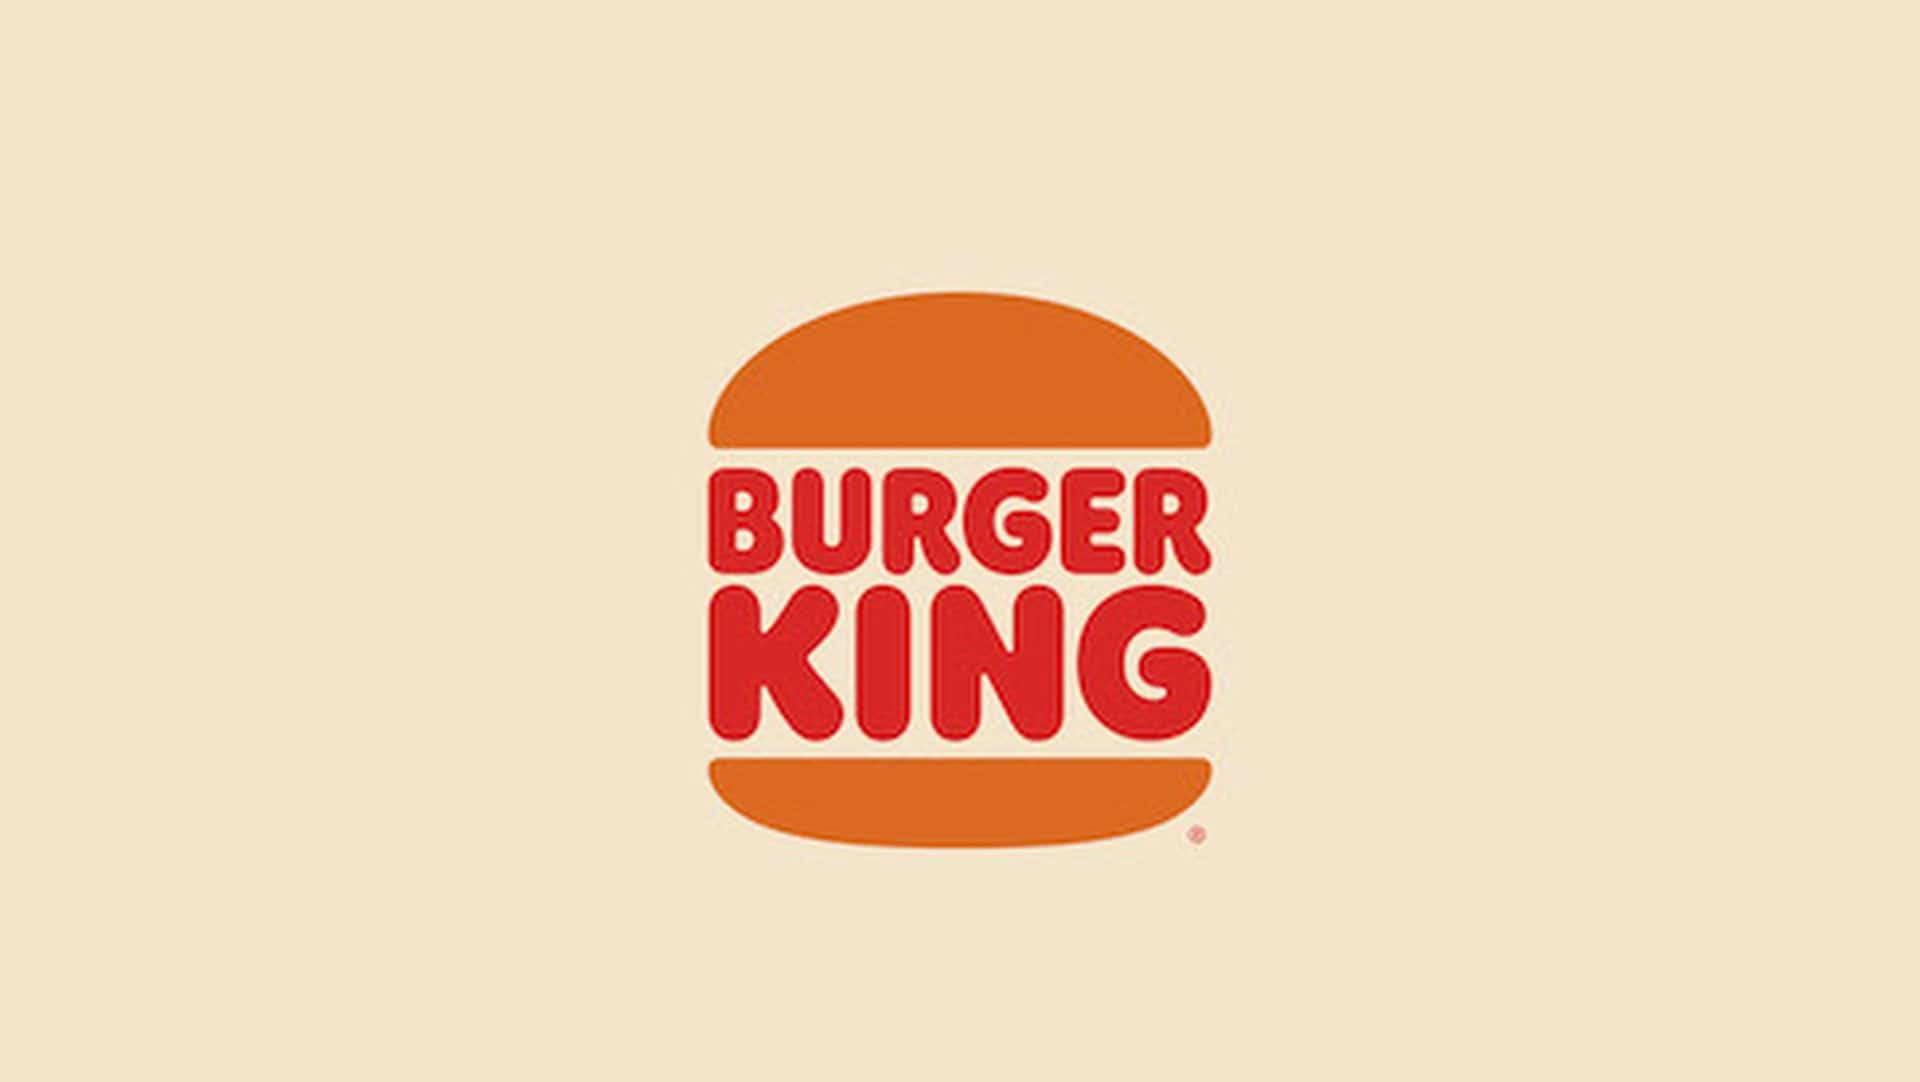 Burger King estrena promoción con personajes de Nintendo en México